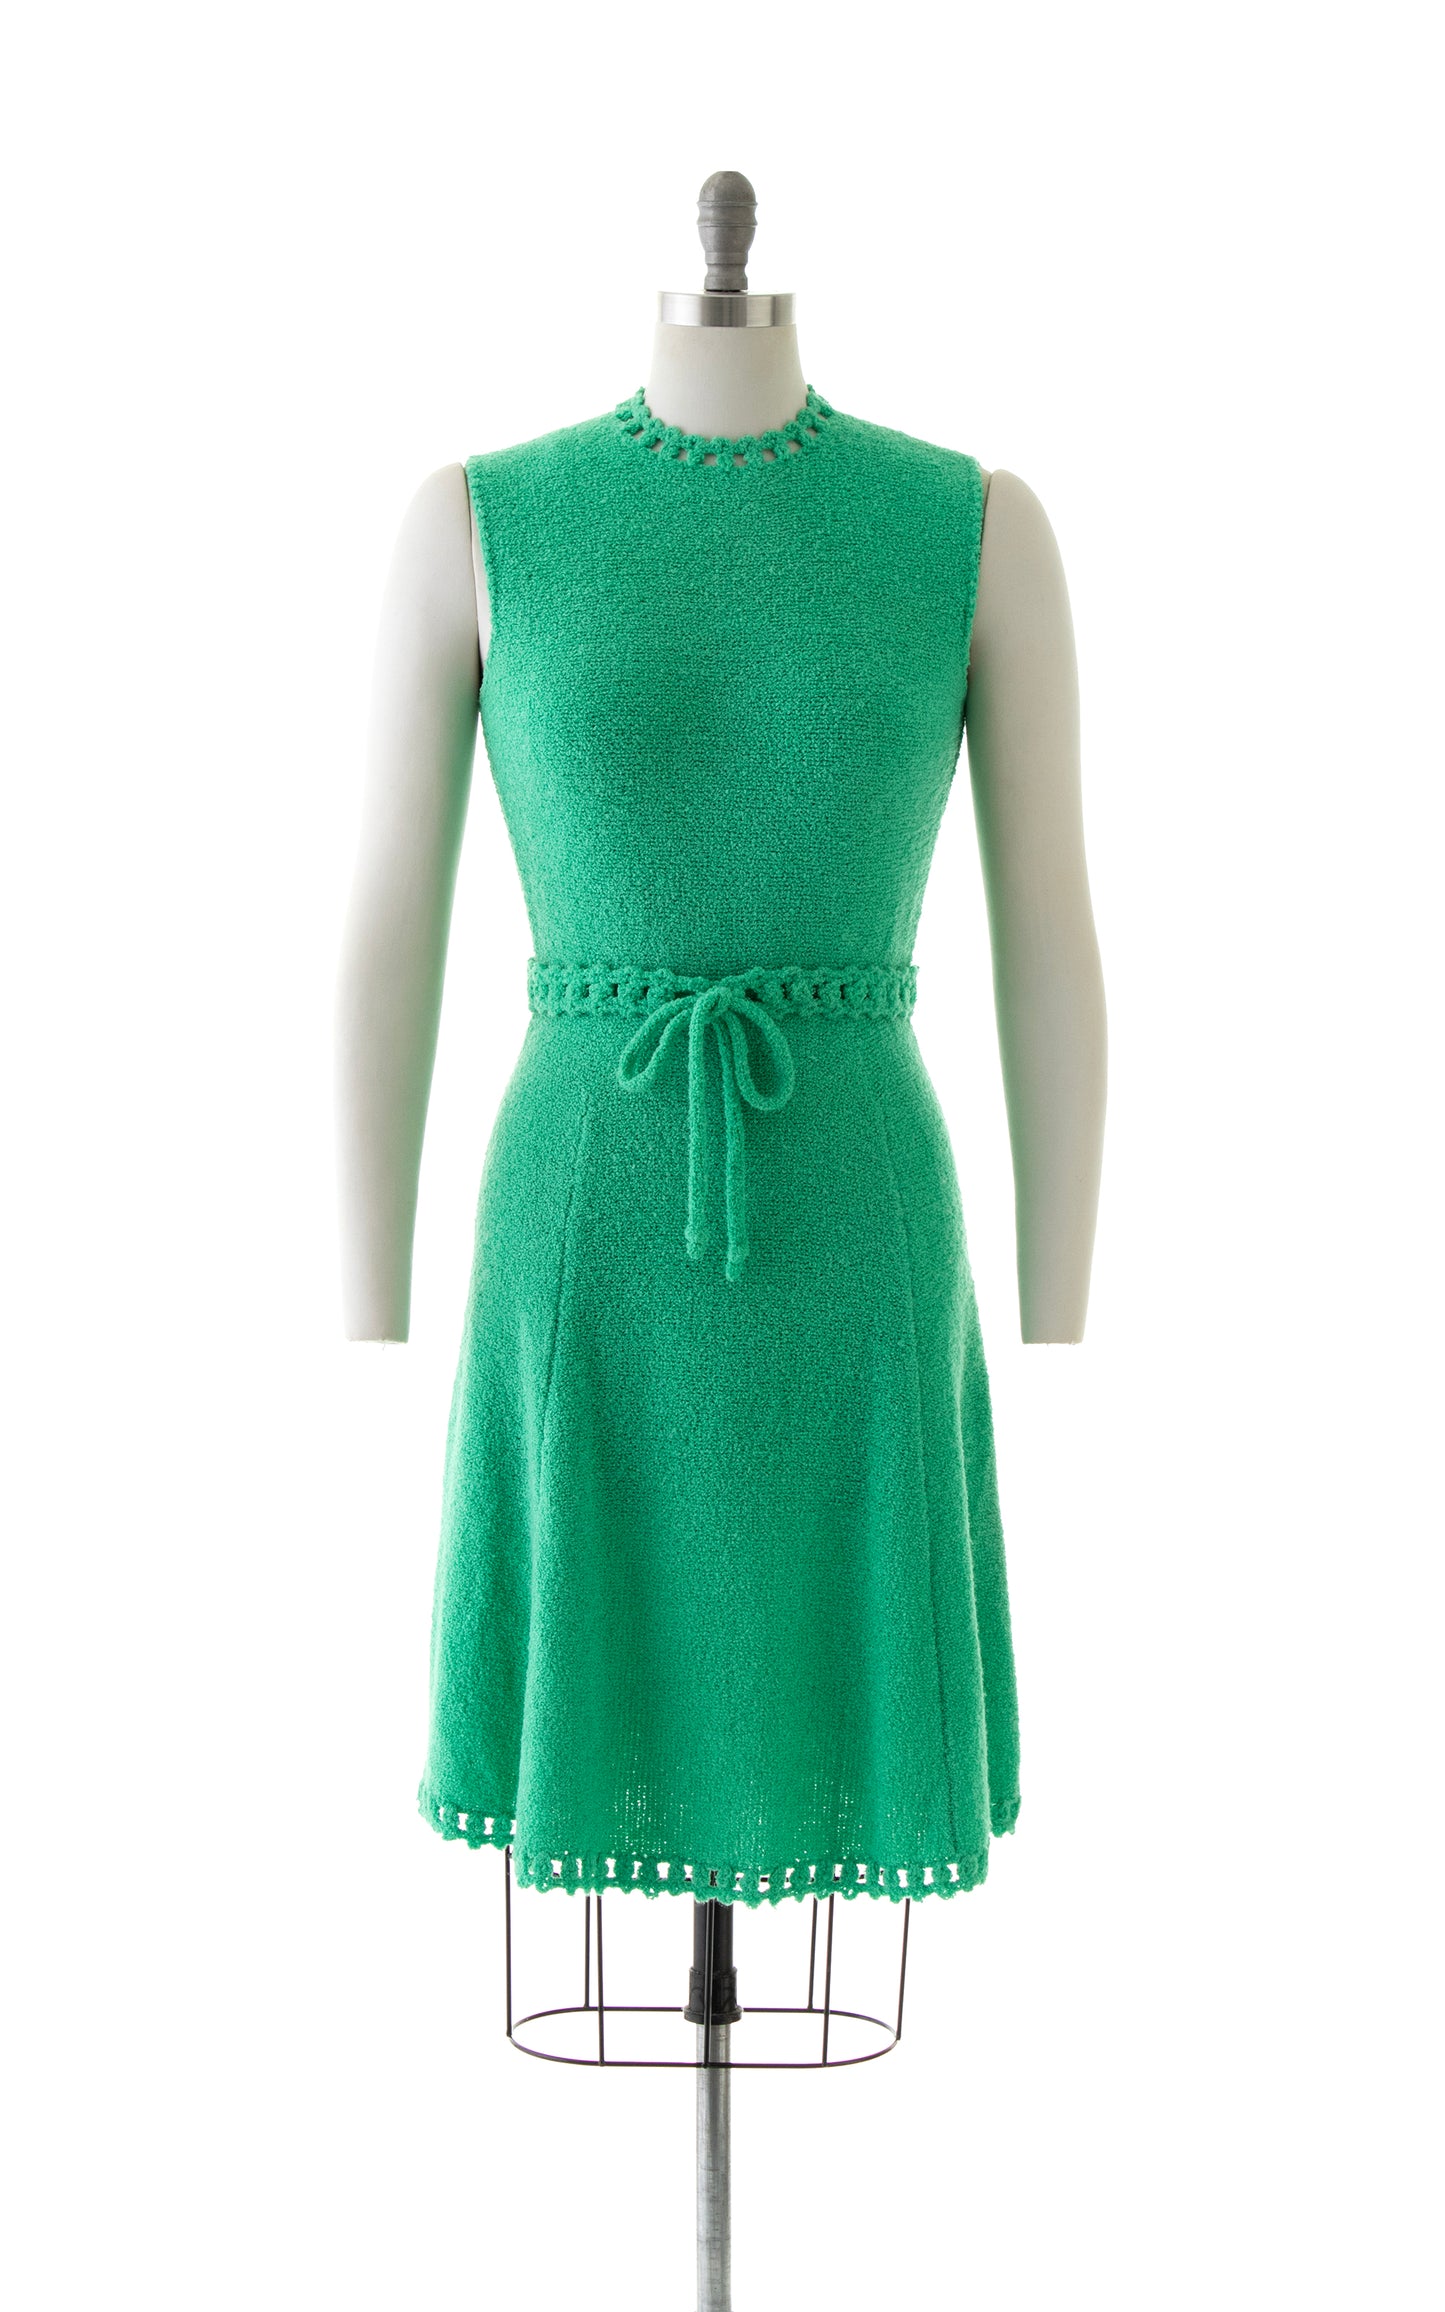 NEW ARRIVAL || 1960s ST JOHN KNITS Sweater Dress | small/medium